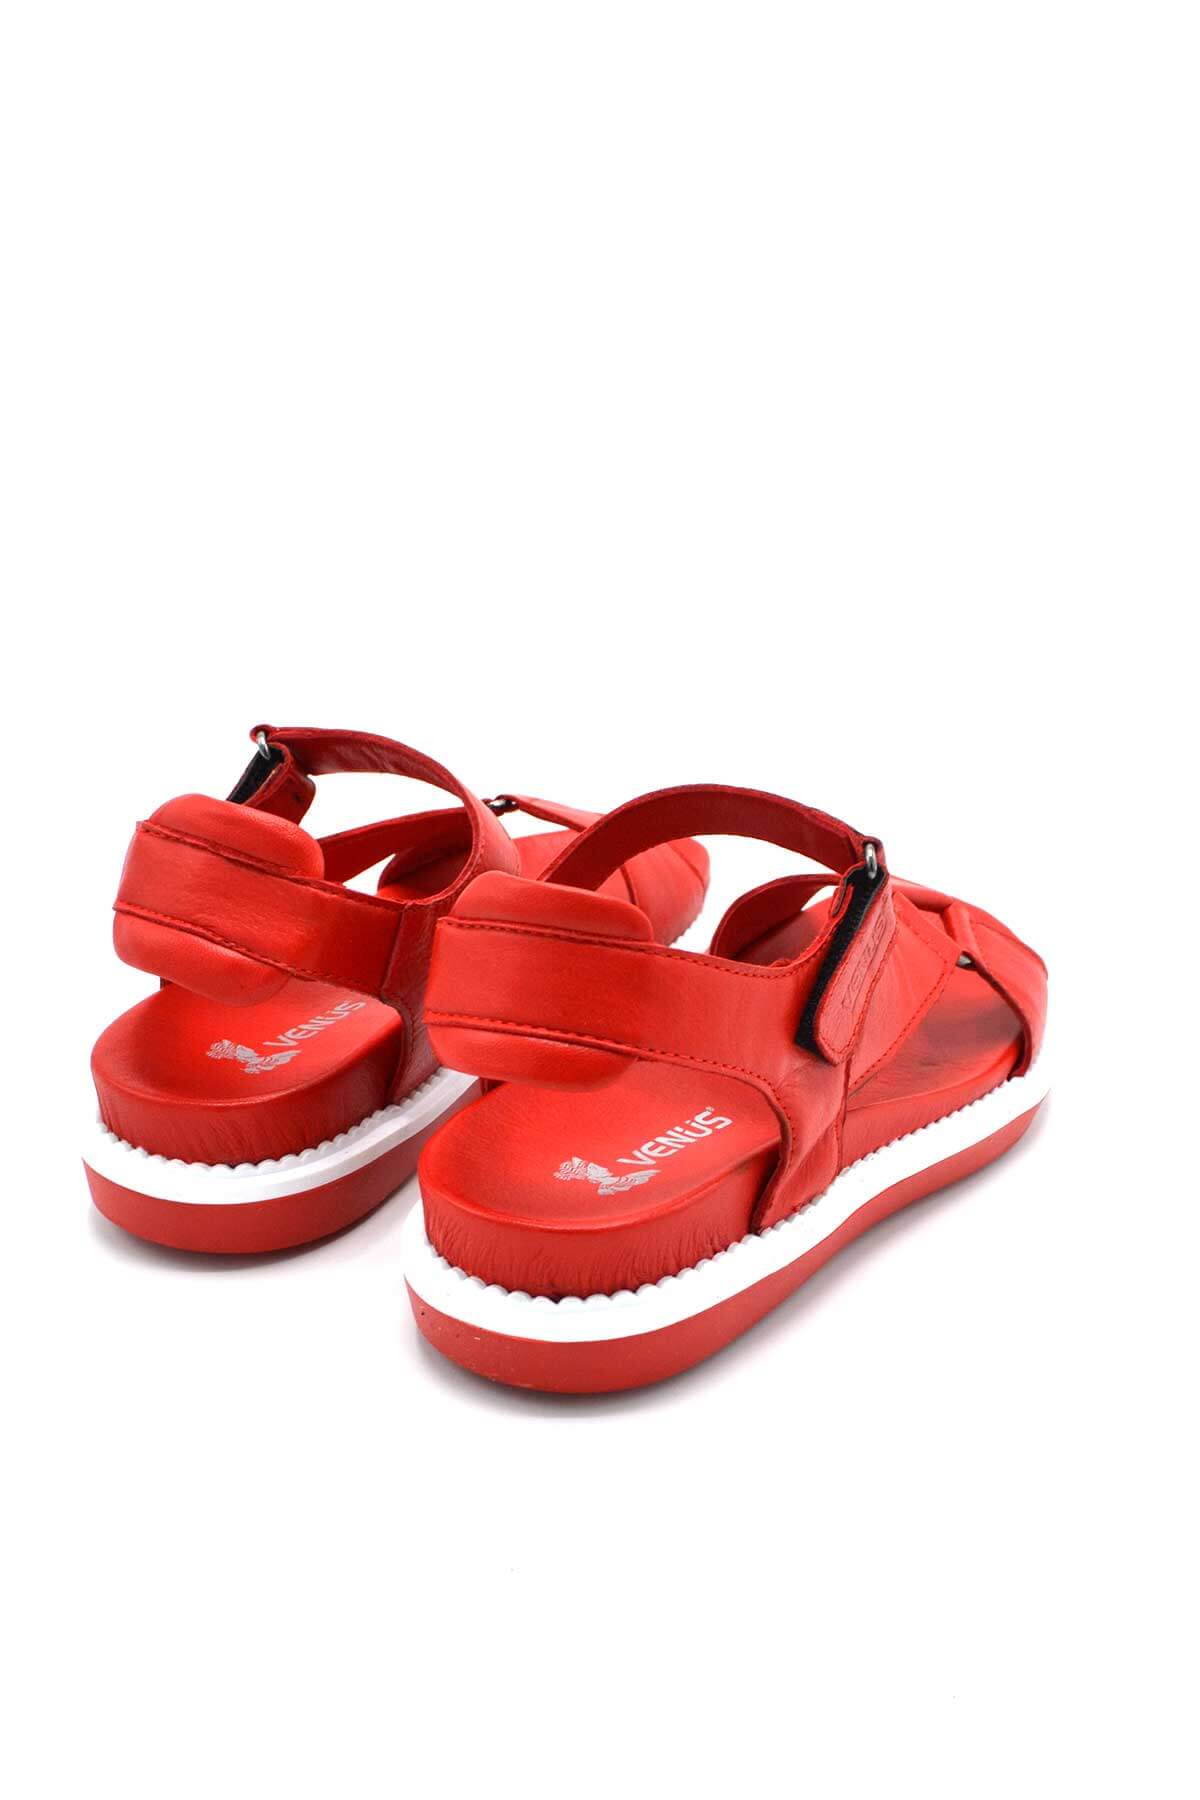 Kadın Comfort Deri Sandalet Kırmızı 202064Y - Thumbnail